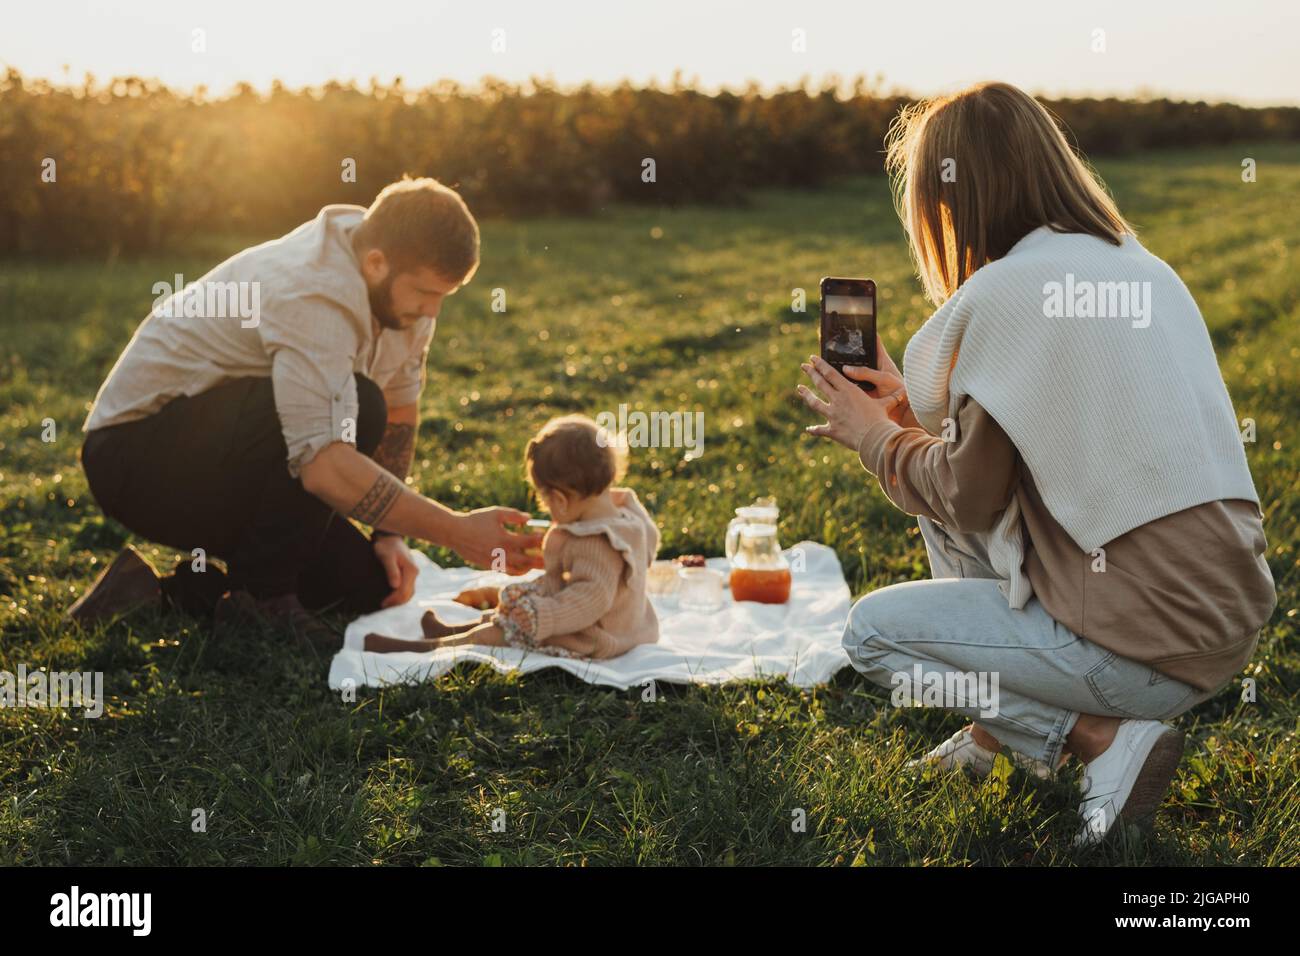 Felice giovane famiglia che ha picnic all'aperto, donna che prende le immagini del suo marito e della figlia del bambino al tramonto Foto Stock